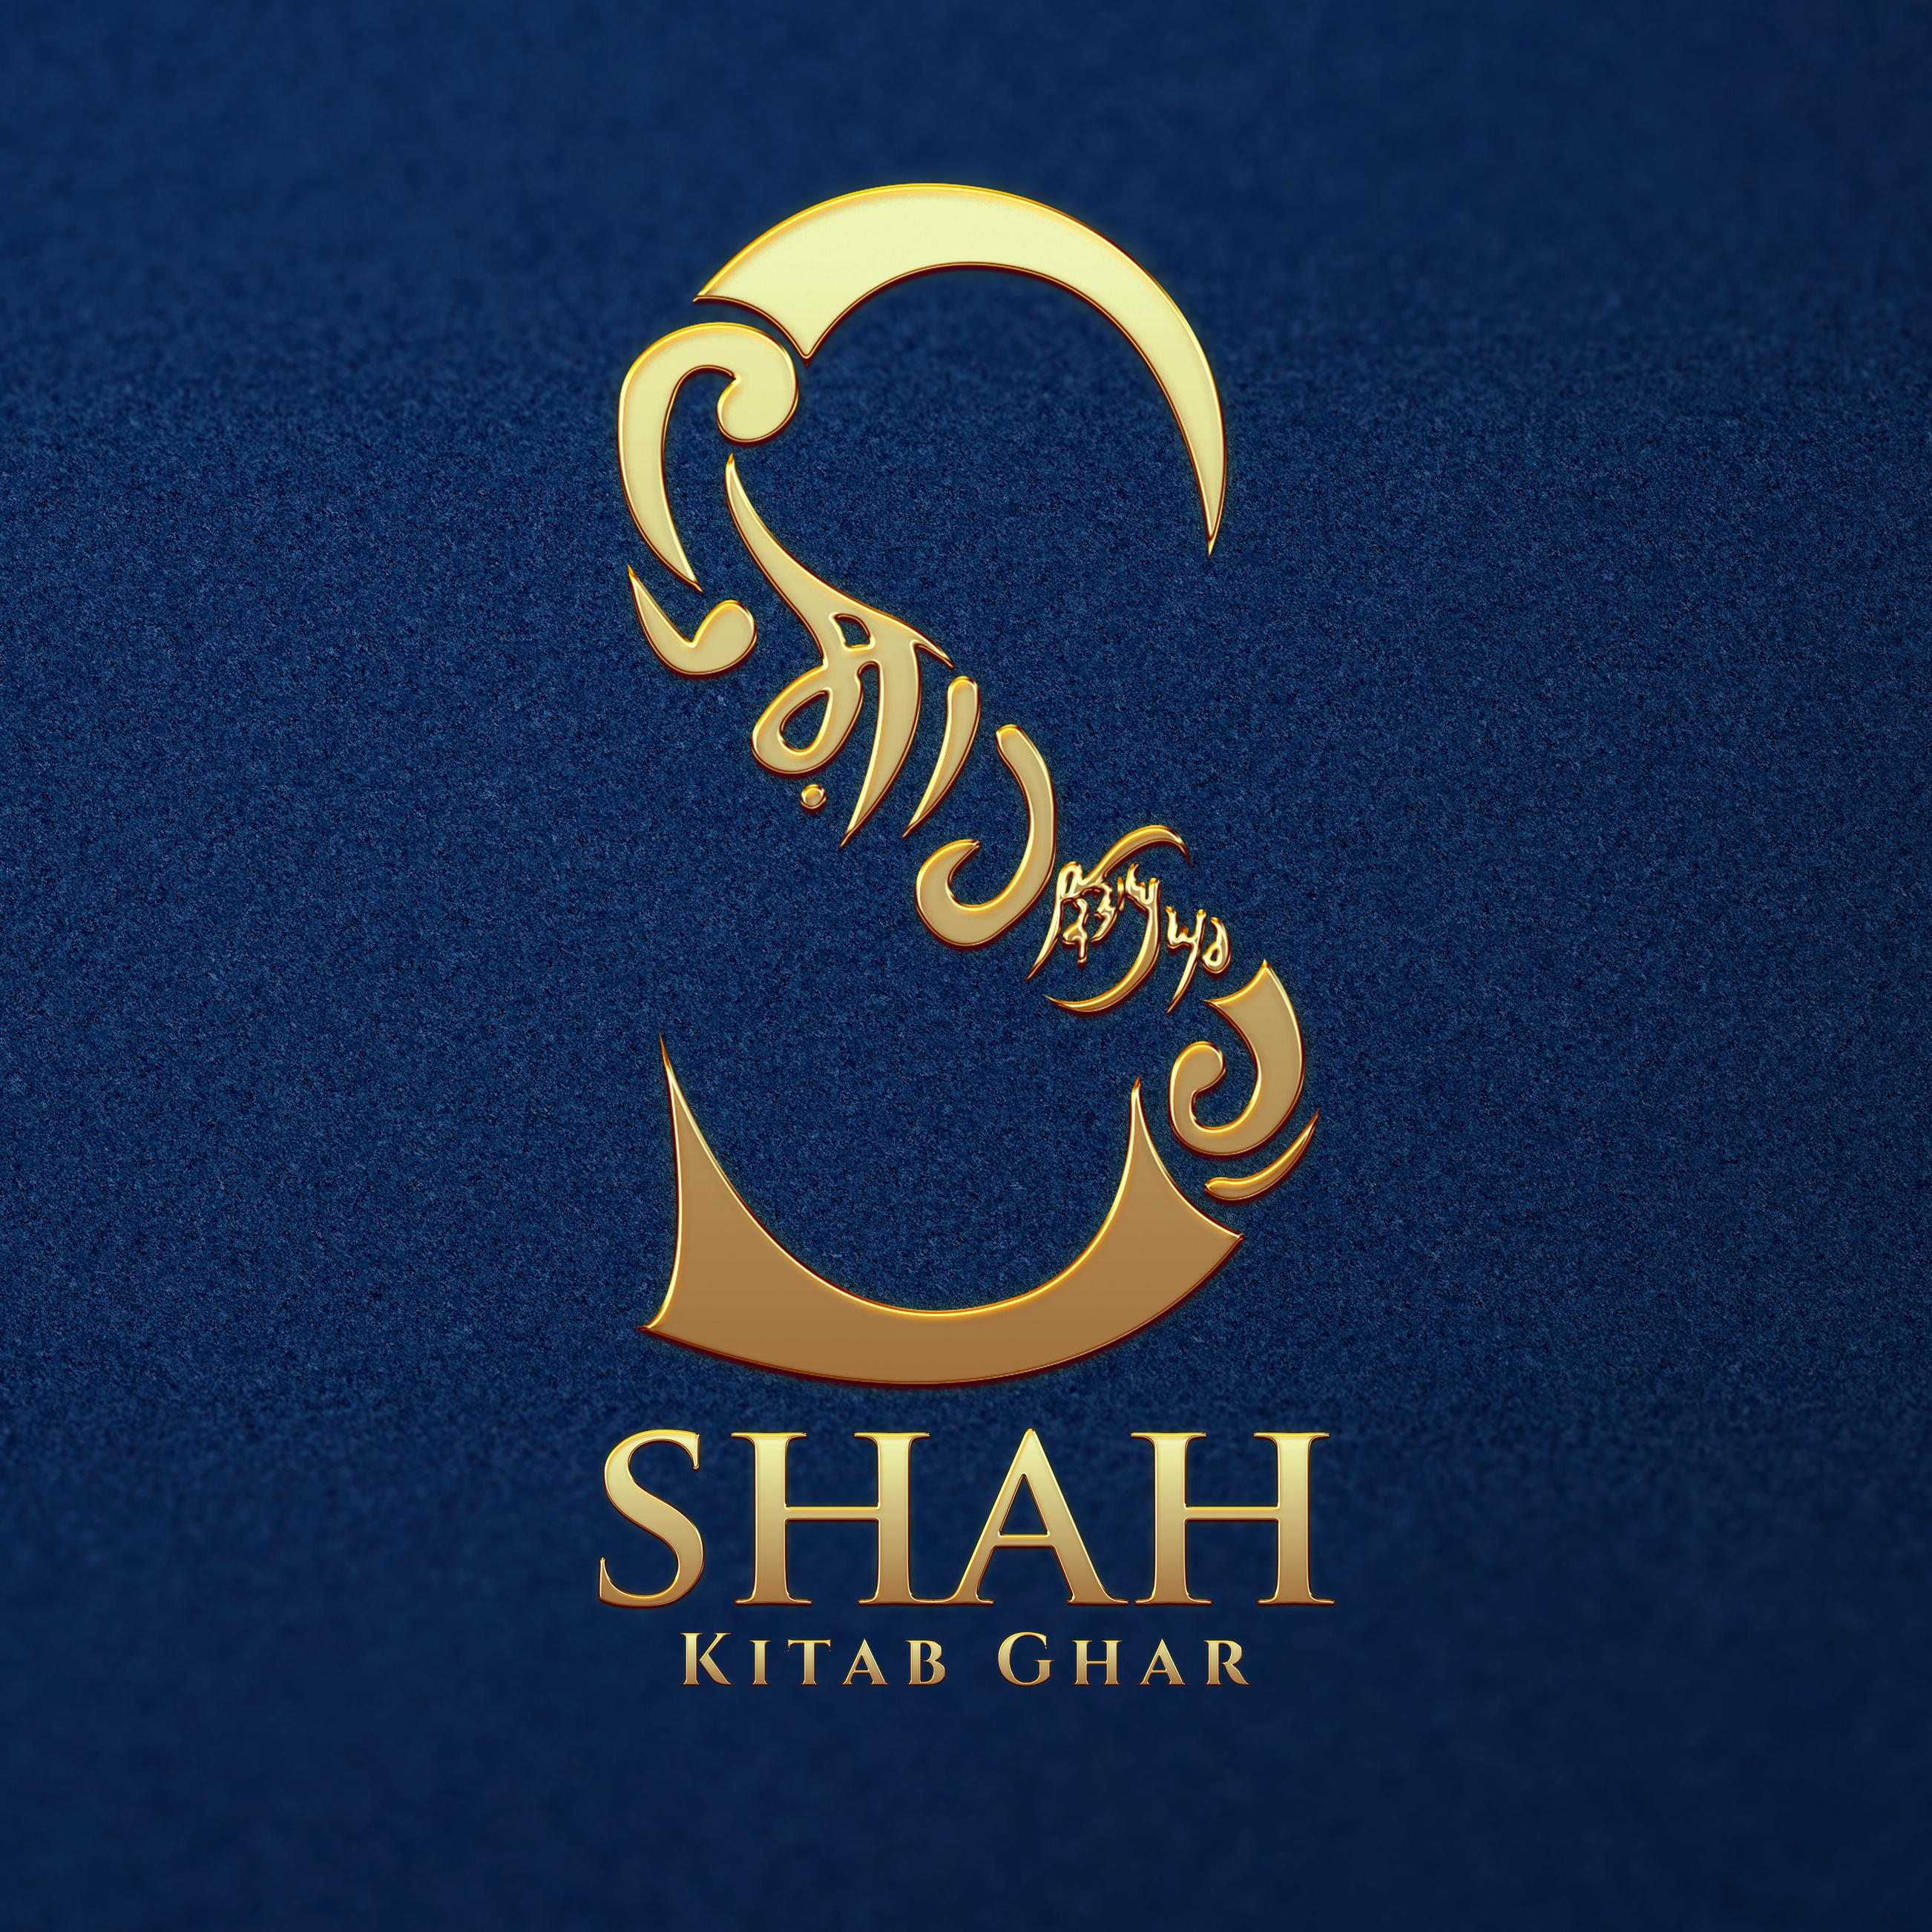 Shah Kitab Ghar Logo